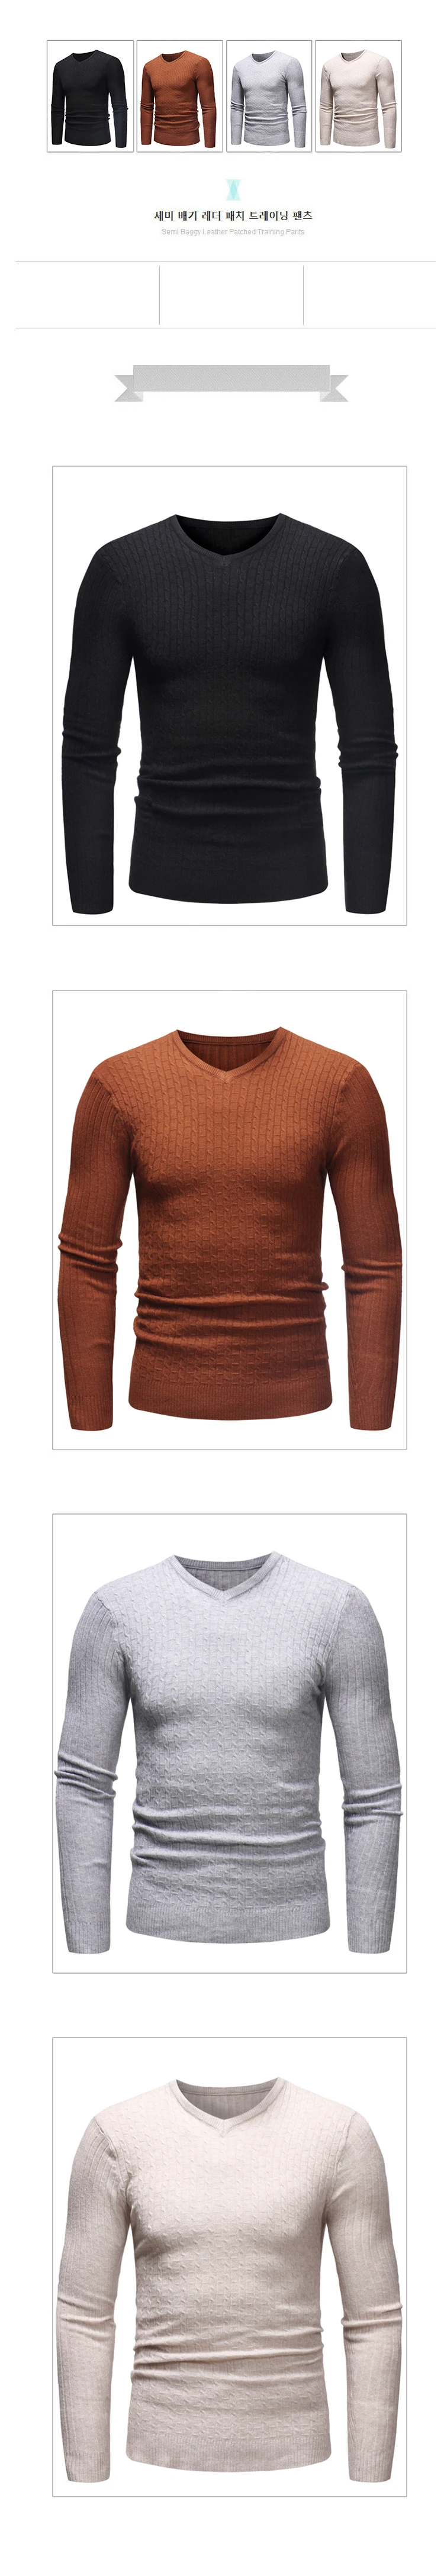 Дропшиппинг Для мужчин пуловер свитер с длинным рукавом Трикотаж 2019 Зимняя классика v-образным вырезом вязаный верхняя одежда